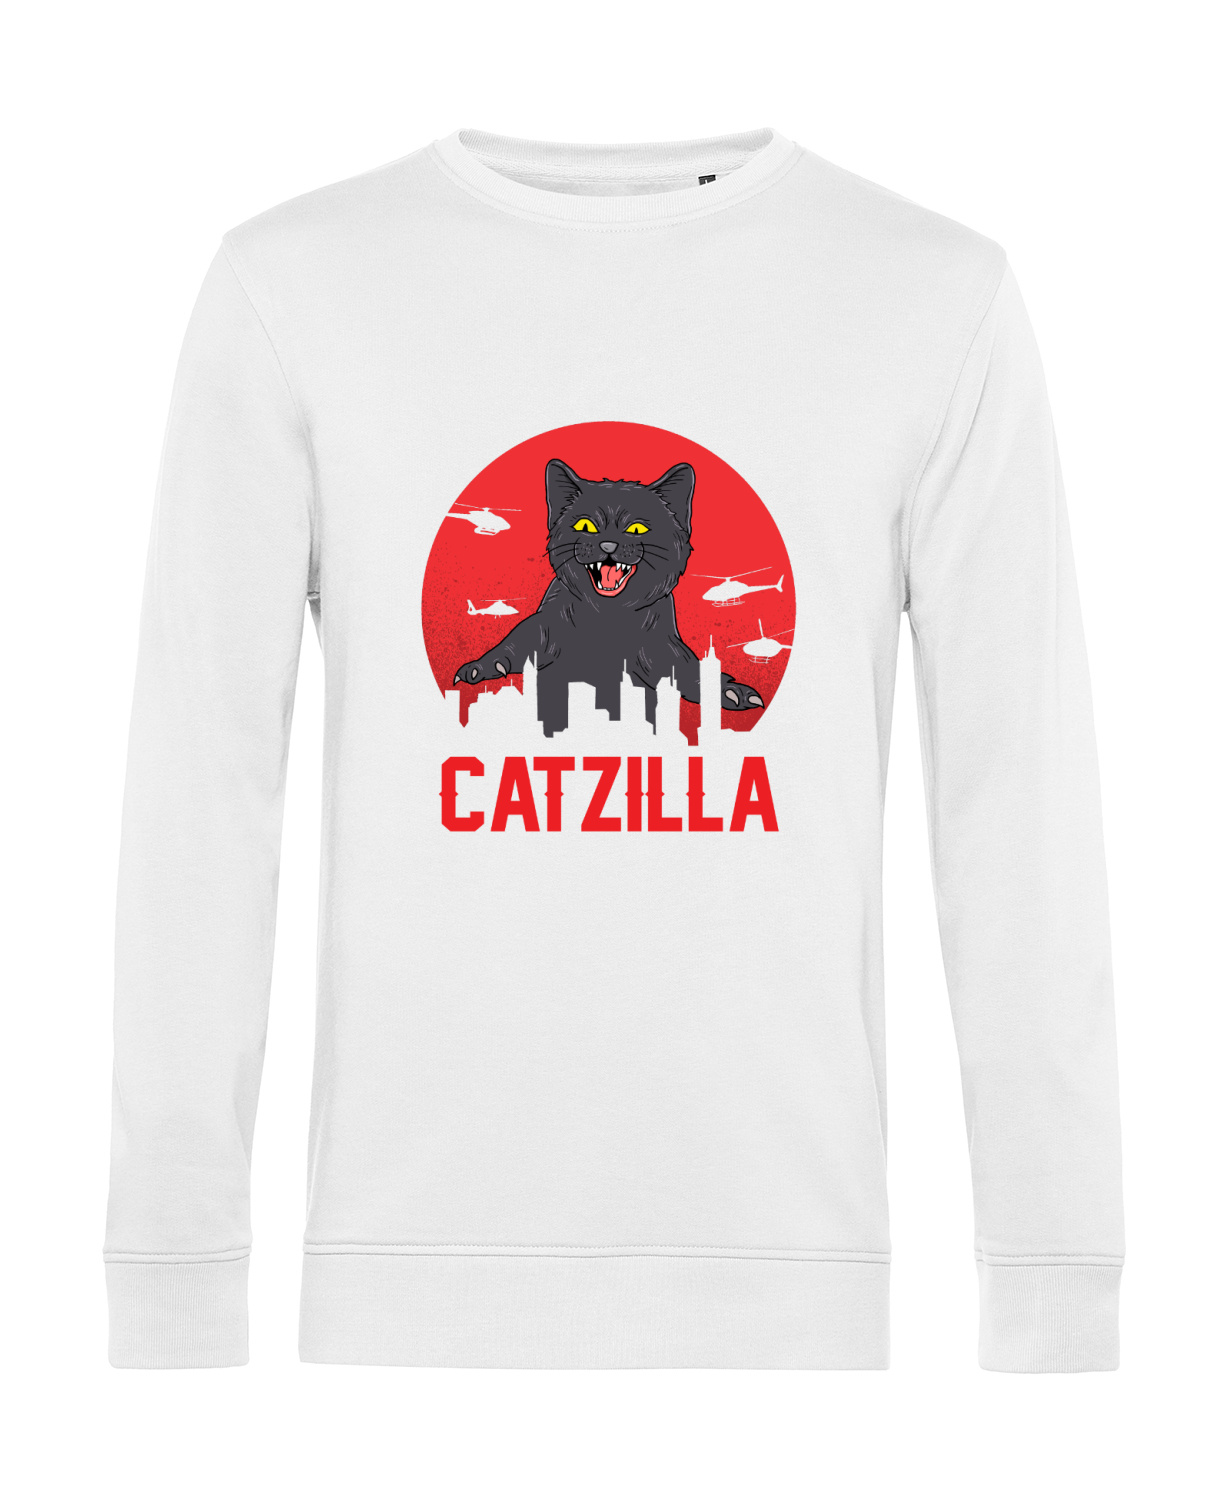 Nachhaltiges Sweatshirt Herren Katzen - Catzilla